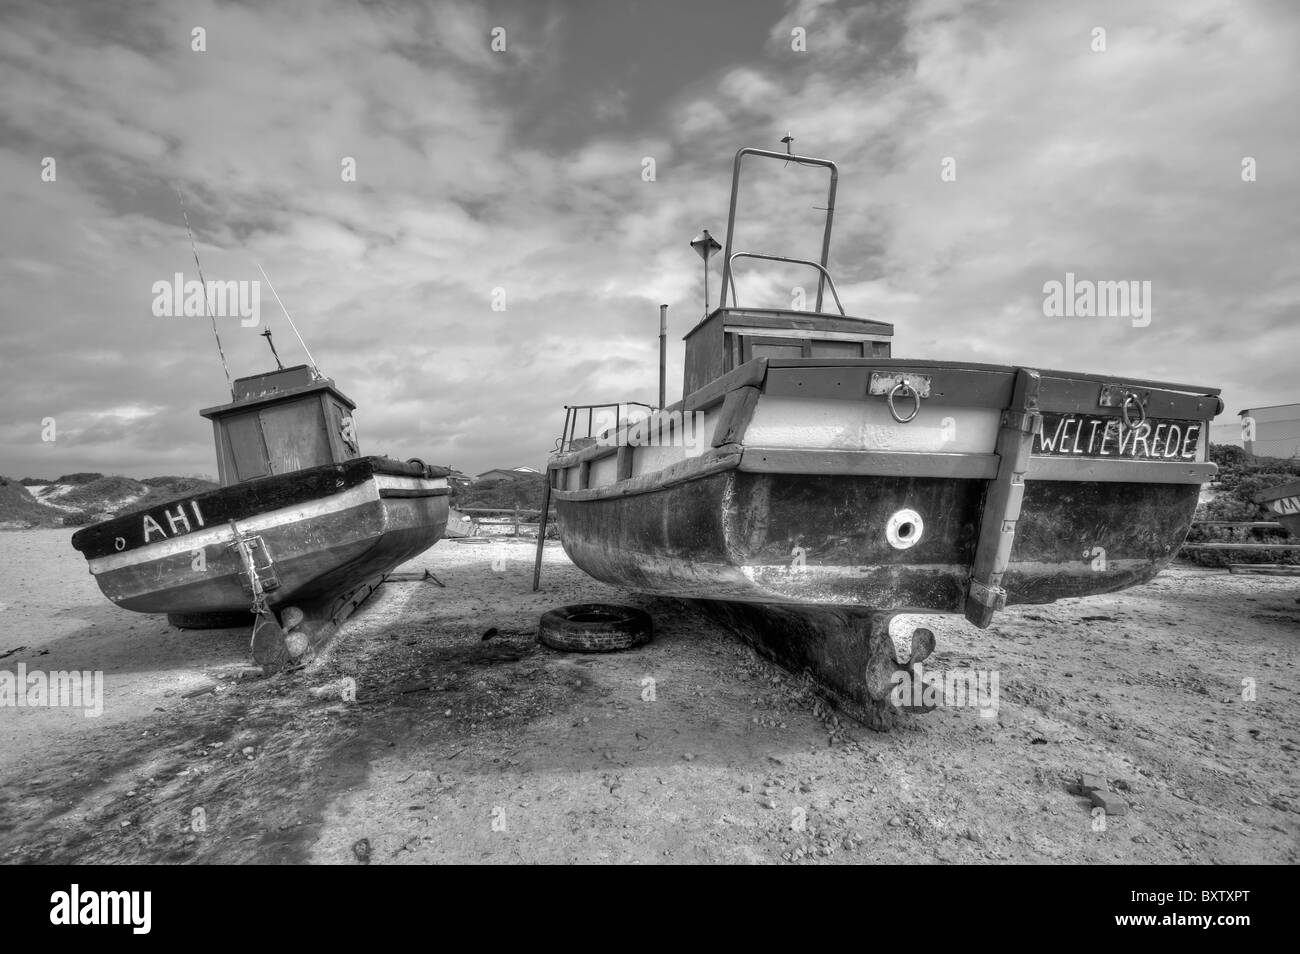 Bateaux de pêche sur le quai pour les réparations et l'entretien dans Struisbaai près du cap Agulhas Le point le plus sud de l'Afrique. Banque D'Images